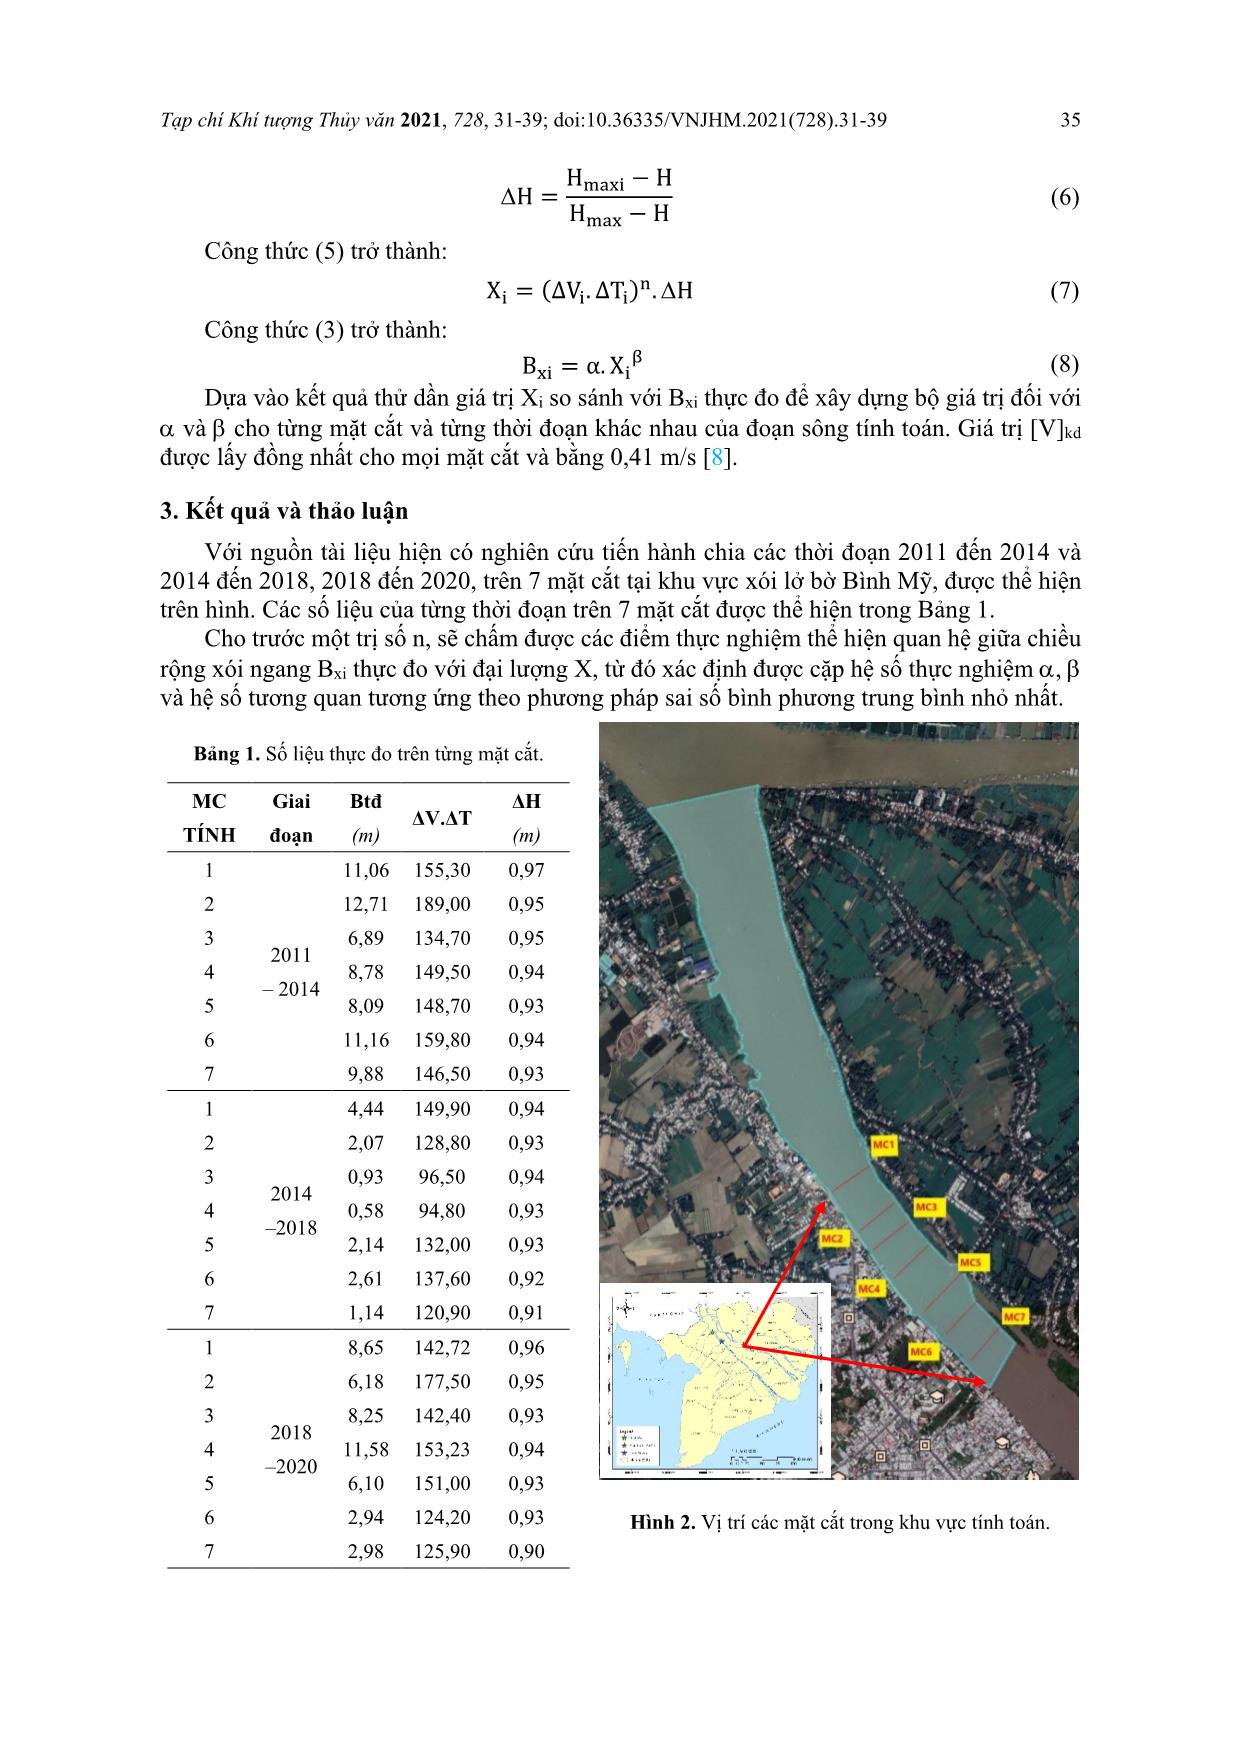 Nghiên cứu khả năng áp dụng công thức kinh nghiệm để tính toán mức độ xói lở bờ sông ở đồng bằng sông Cửu Long – Thí điểm tại đoạn xói lở bờ sông Hậu ở Long Xuyên, tỉnh An Giang trang 5